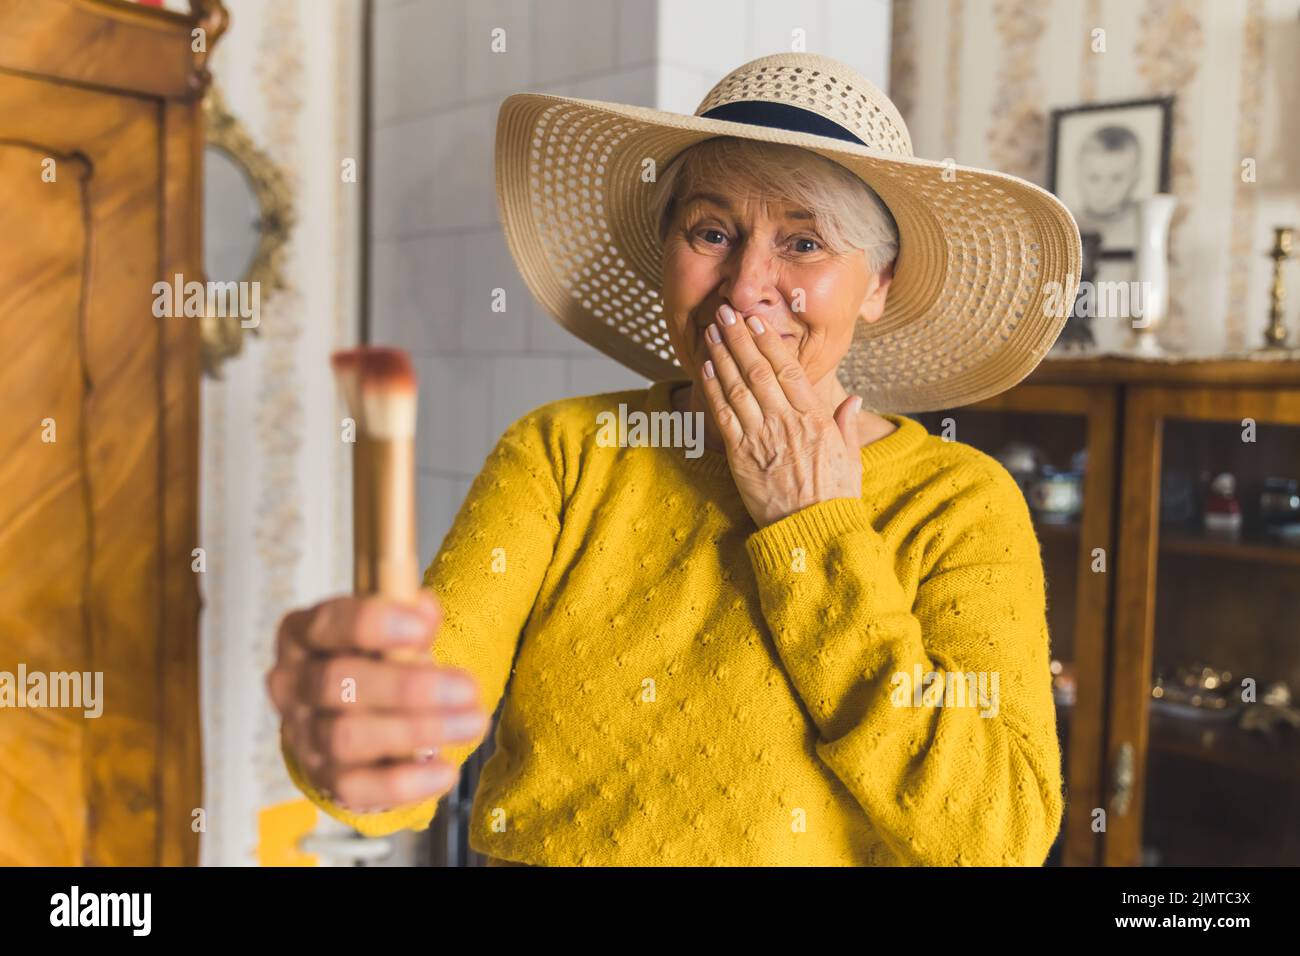 Drôle caucasien femme âgée, portant un chapeau de plage élégant à la maison et tenant des pinceaux de maquillage dans une main, l'aspect choqué et confus. Photo de haute qualité Banque D'Images